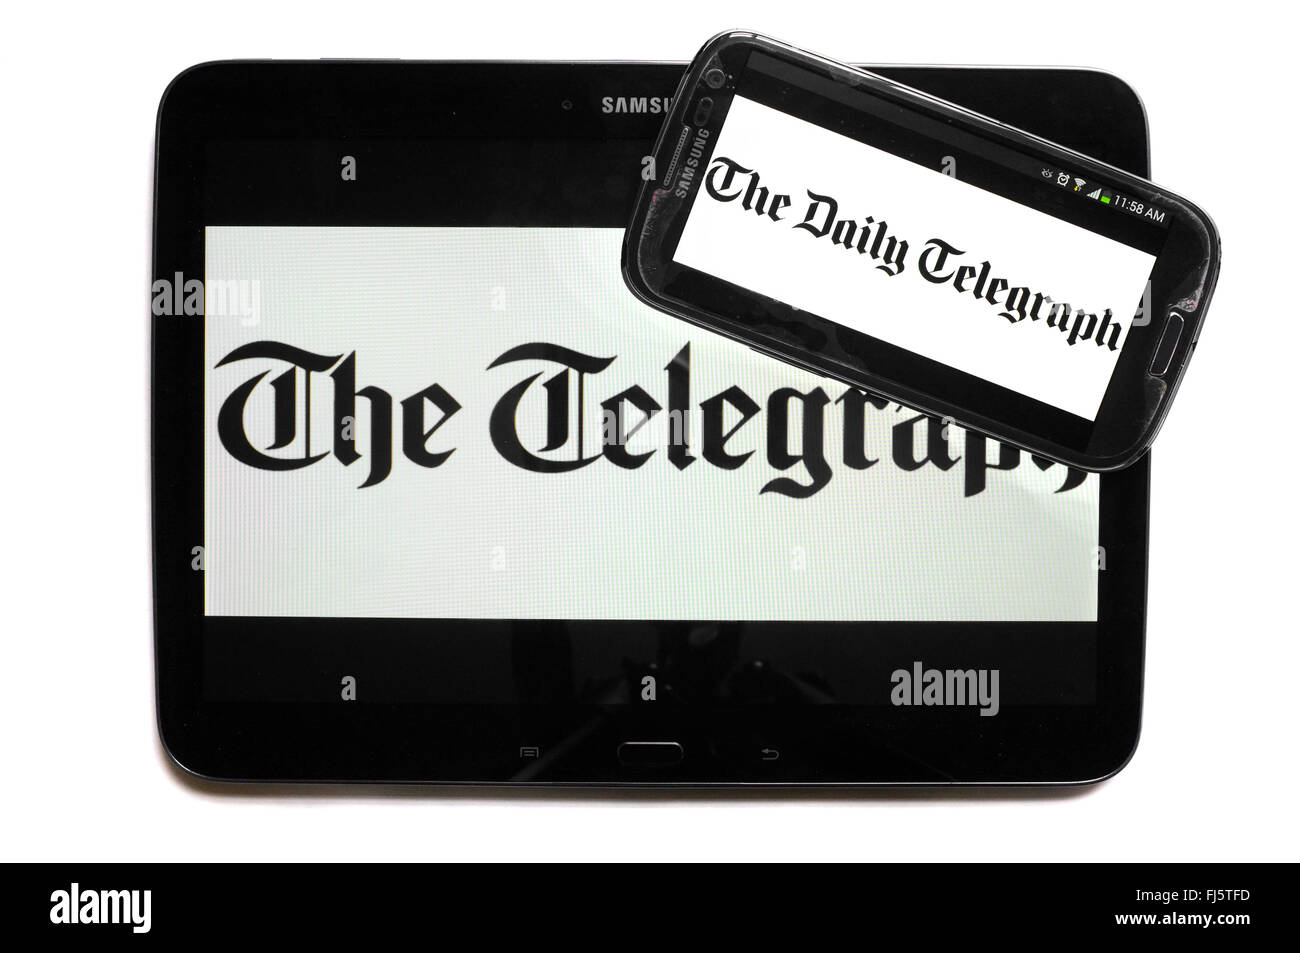 Le logo de la Telegraph apparaissant sur les écrans d'une tablette et un smartphone. Banque D'Images